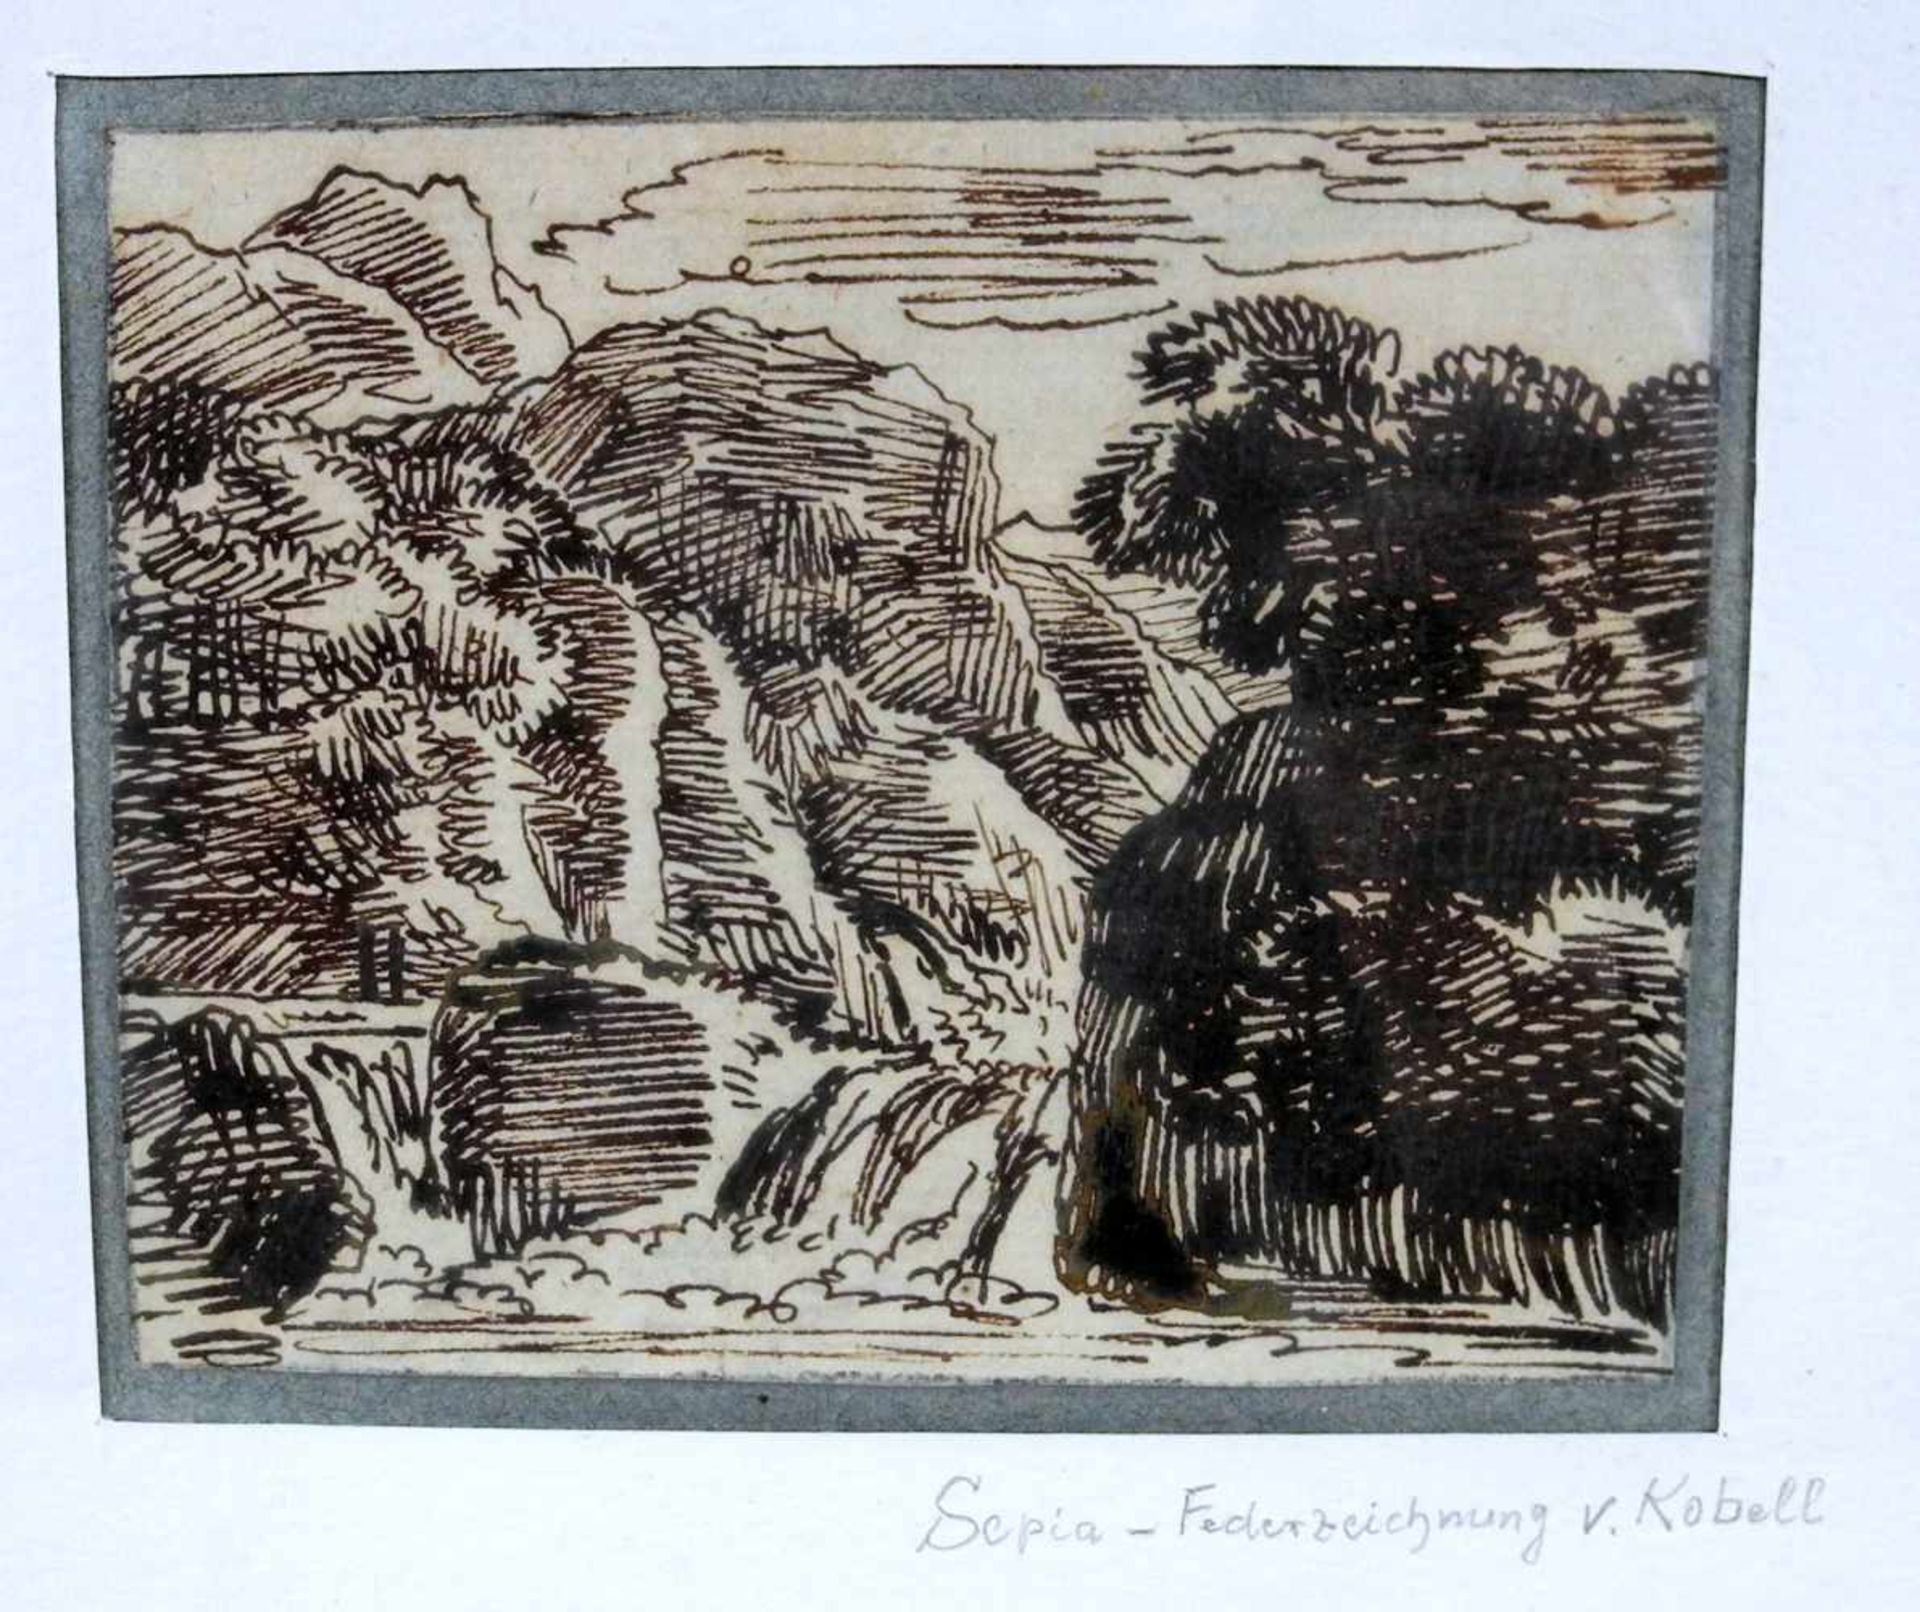 Franz Kobell, 1749 Mannheim - 1822 MünchenSepia-Federzeichnung. Kobell war Maler, Zeichner und